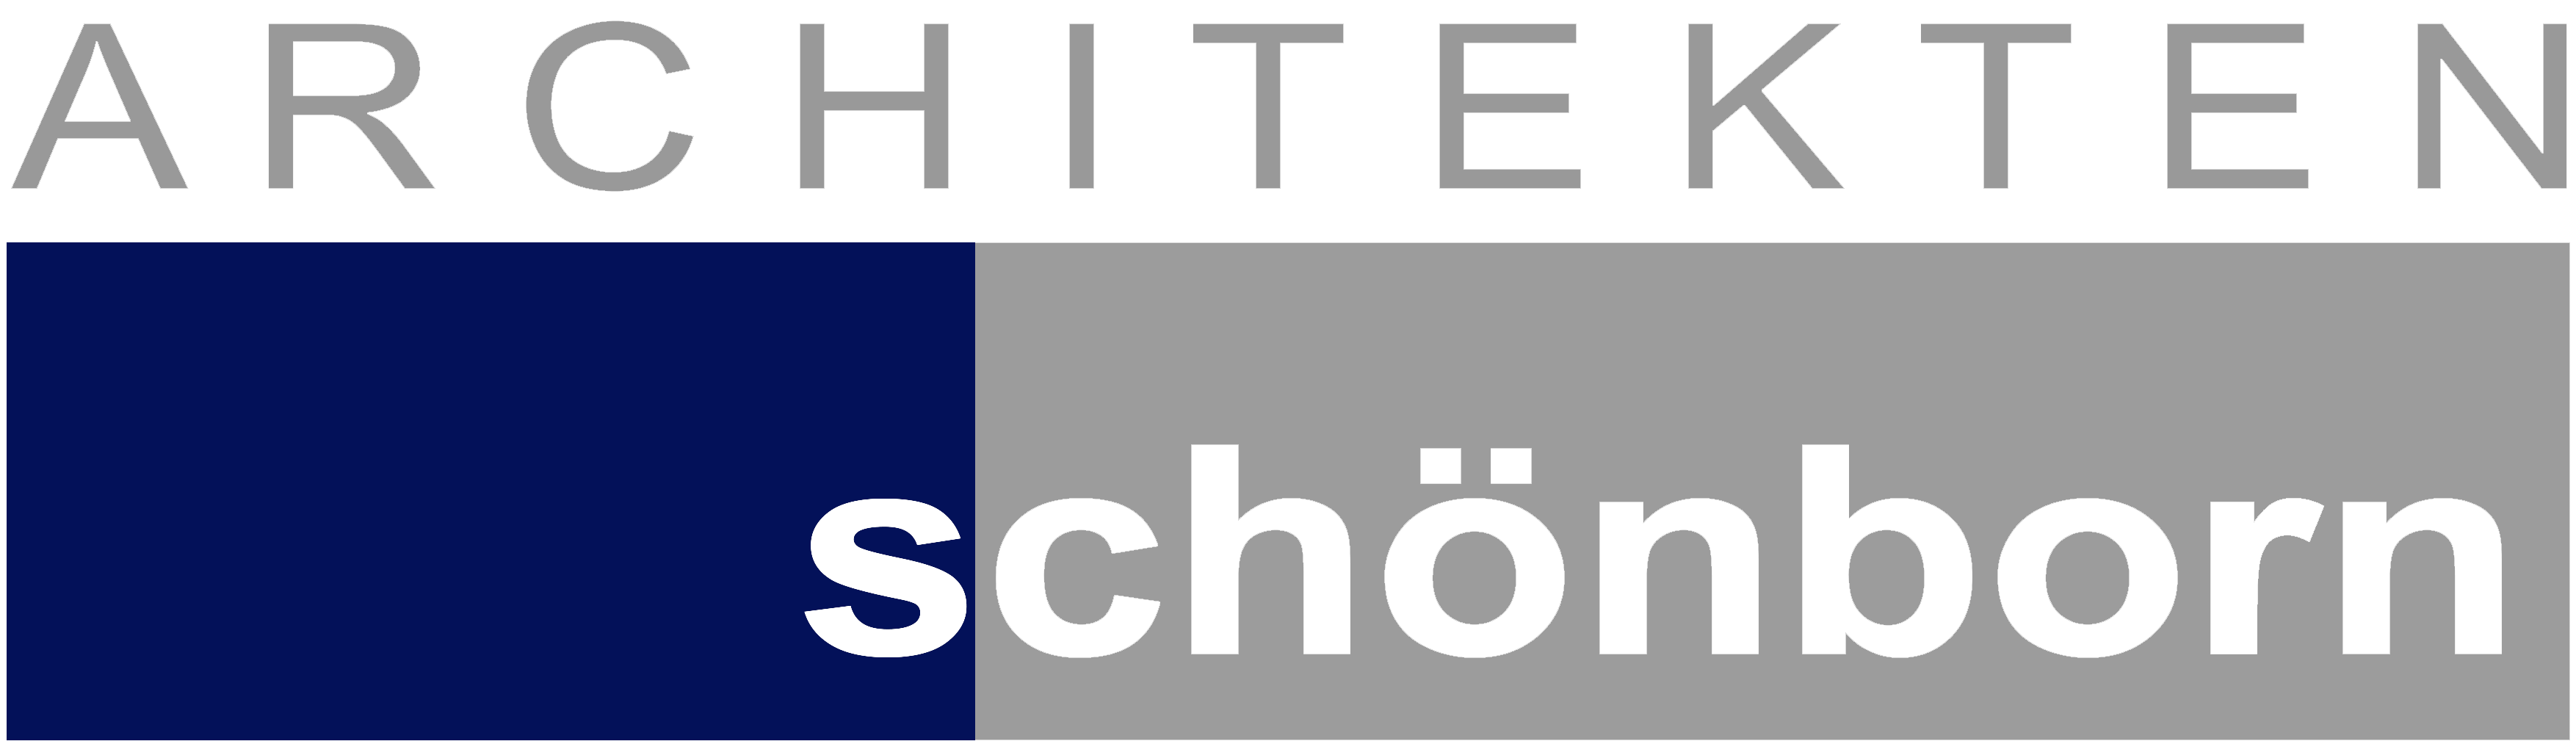 Architekten Schönborn